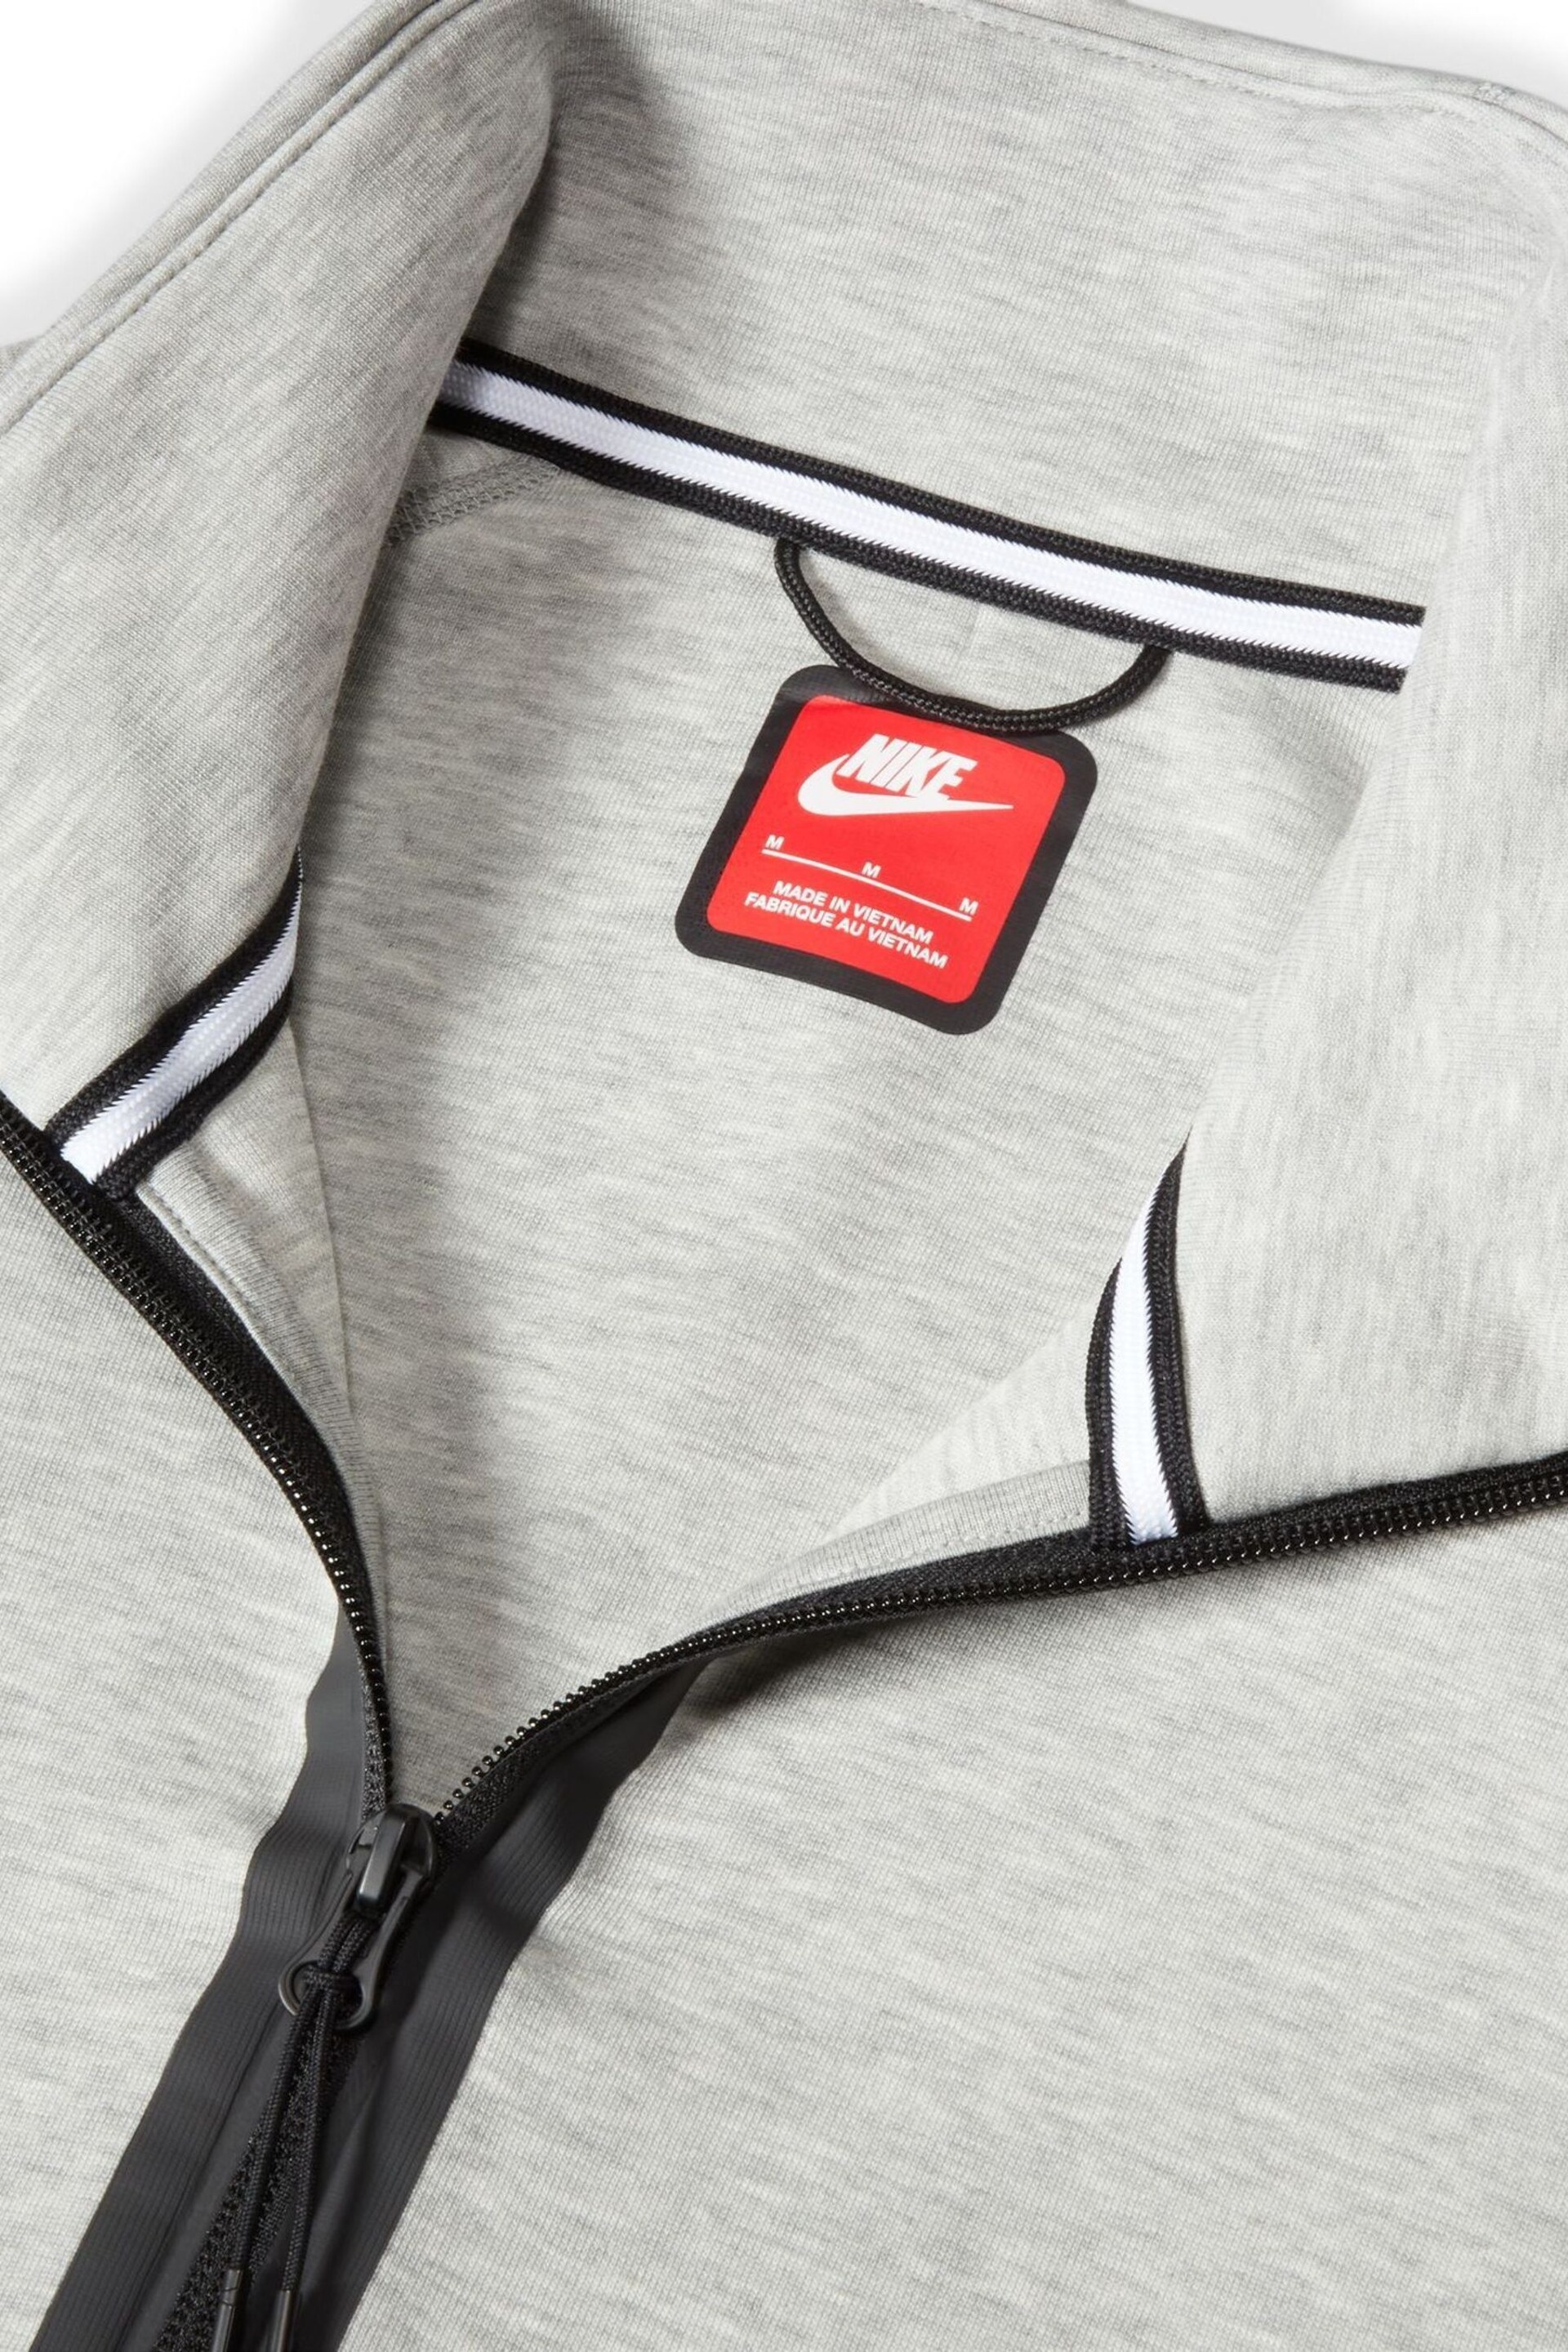 Nike Grey Tech Fleece Half Zip Sweatshirt - Image 15 of 16